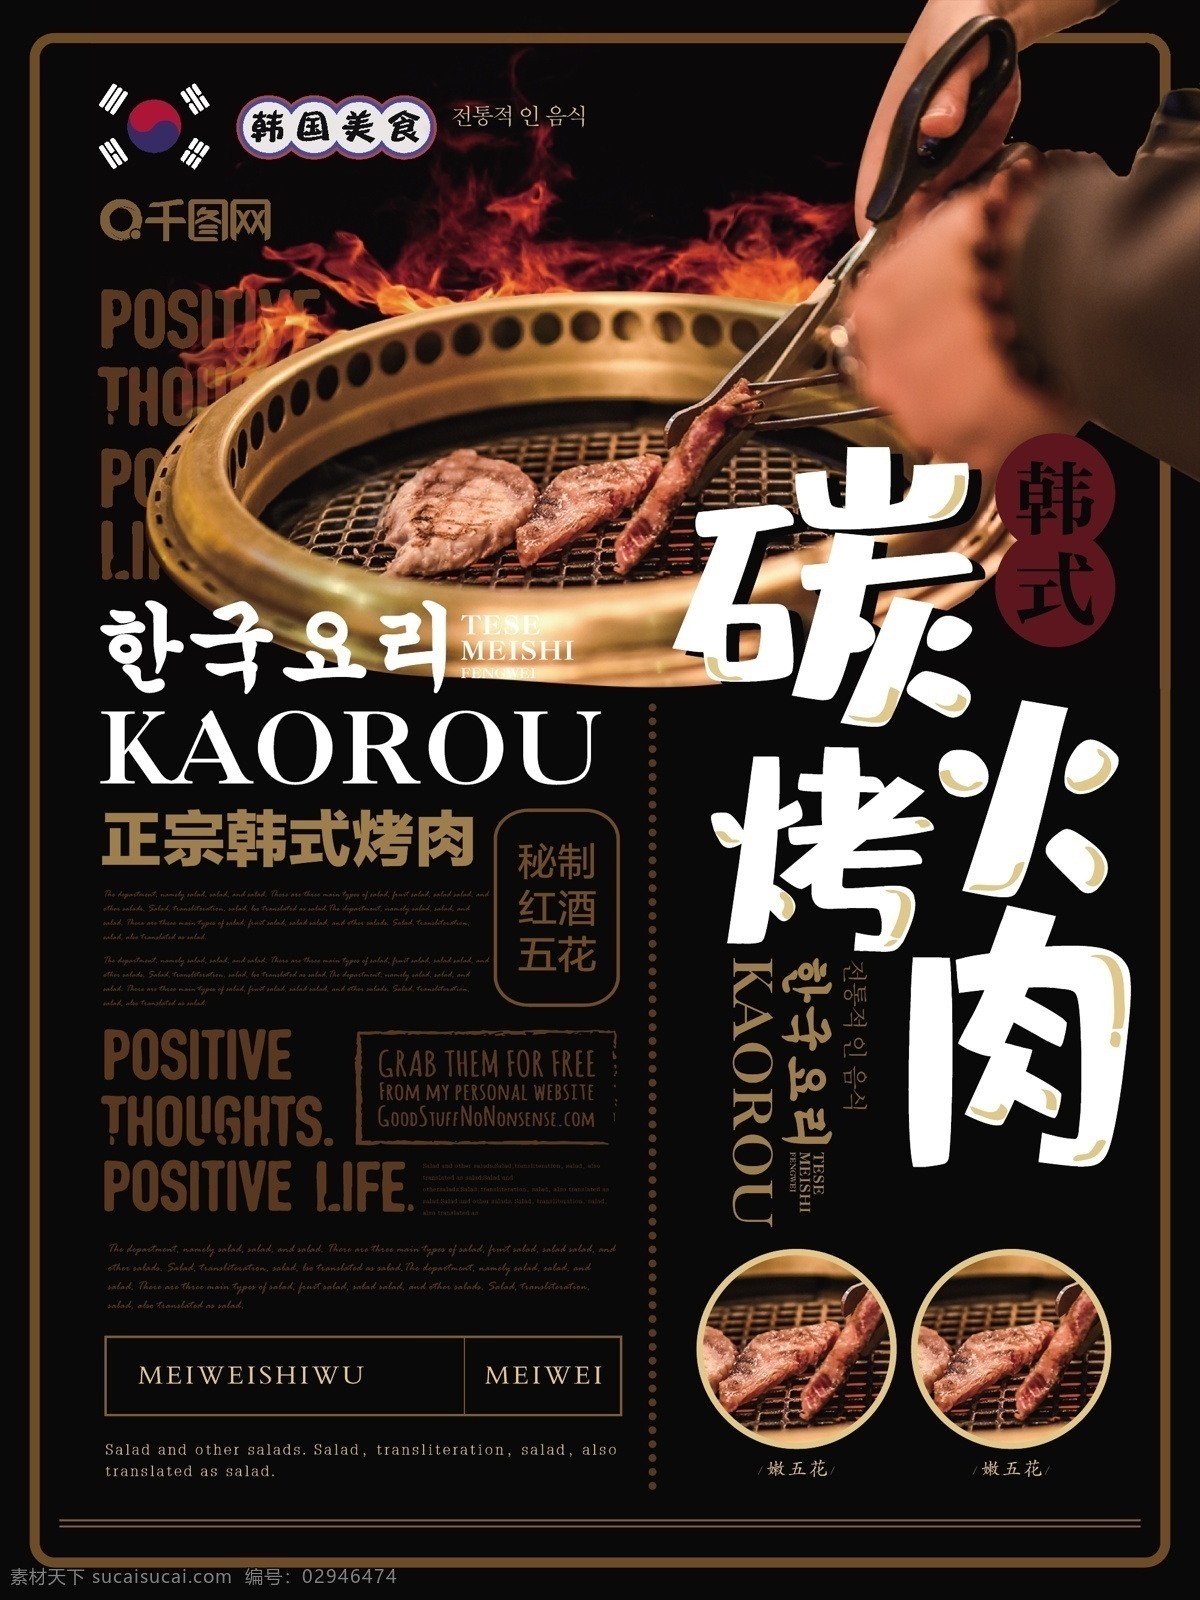 简约 大气 韩式 烤肉 海报 简约风 碳火烤肉 主题 韩式烤肉 韩国料理 美食 宣传